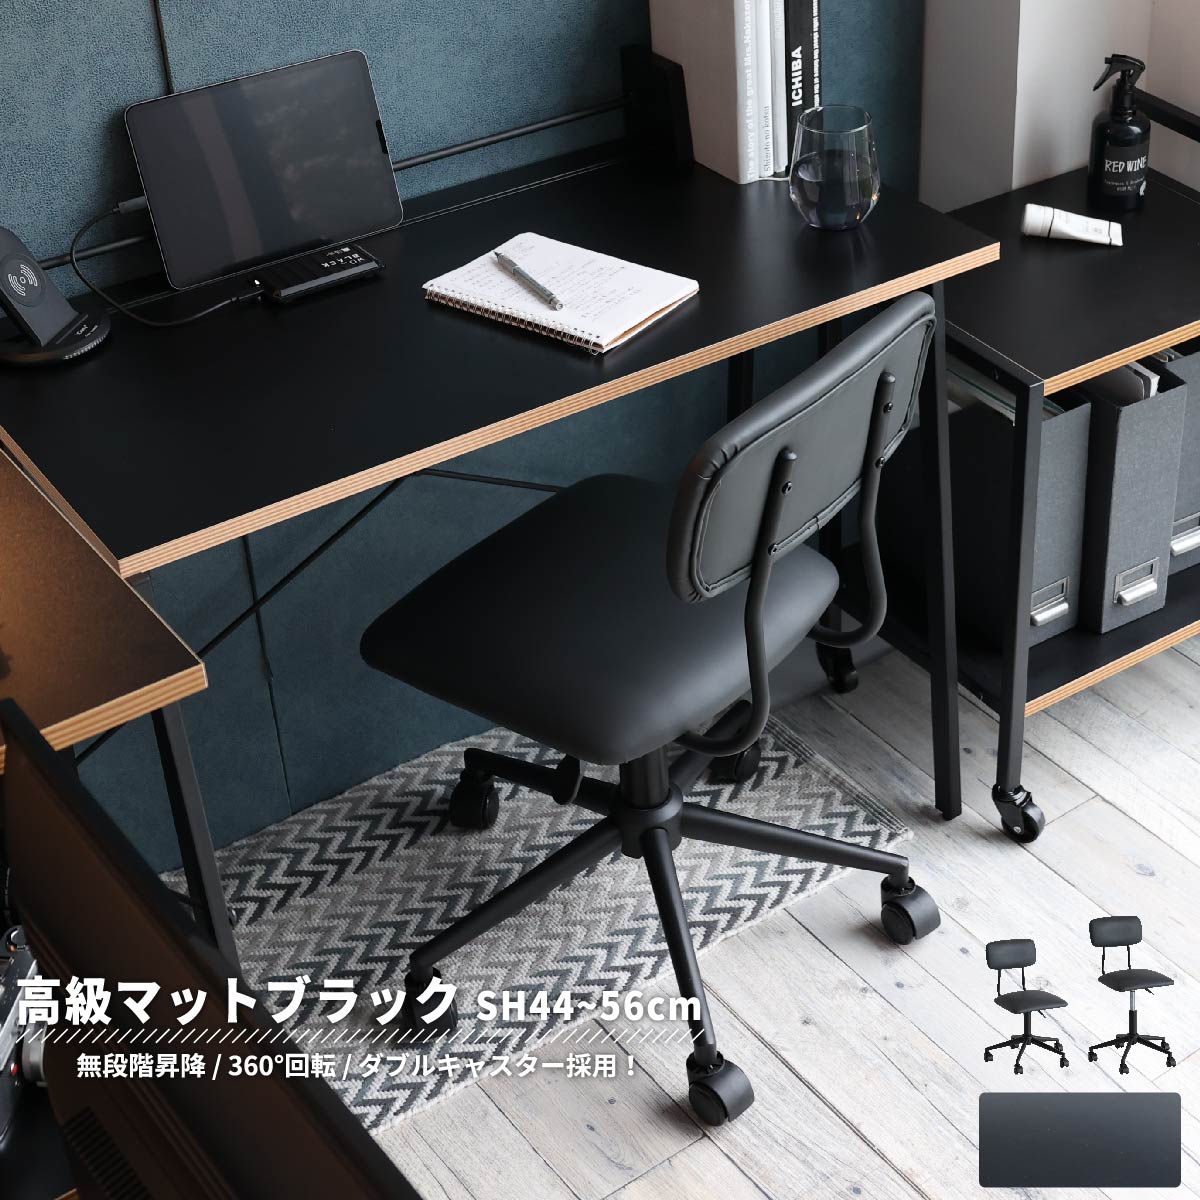 オフィスチェア デスクチェア メディカルチェア イス 椅子 おしゃれ かわいい 肘なし ブラック 黒 コンパクト キャスターチェア 合皮 レザー  新生活 一人暮らし